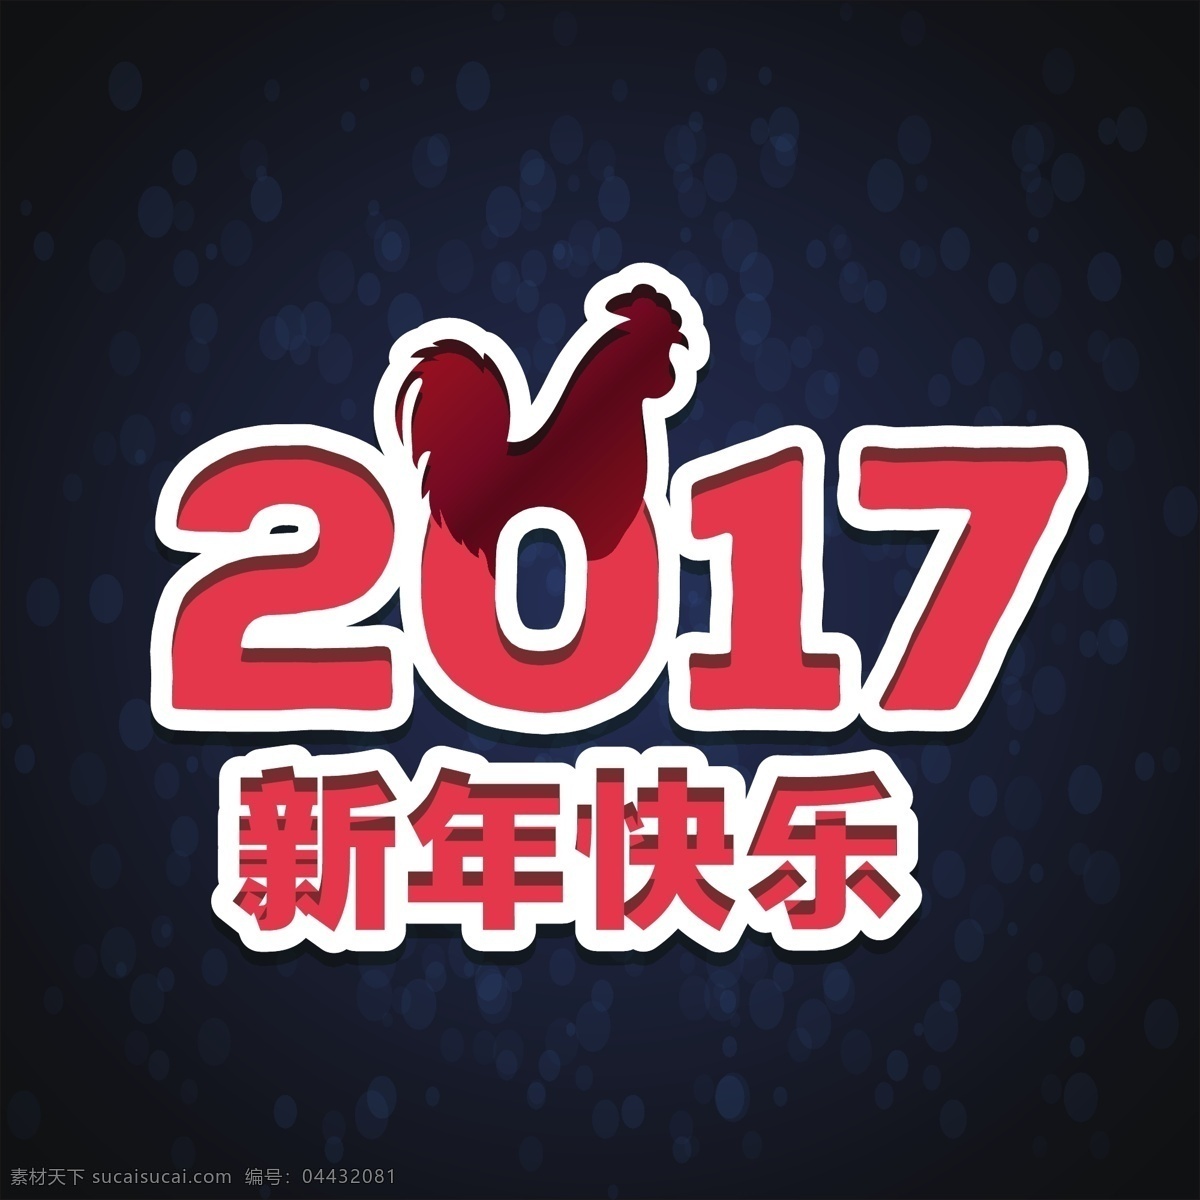 中国 新年 红色 字母 背景 冬天 新的一年 2017 人 动物 庆祝 快乐 节日 事件 的背景下 公鸡 十二月 东方 年 亚洲